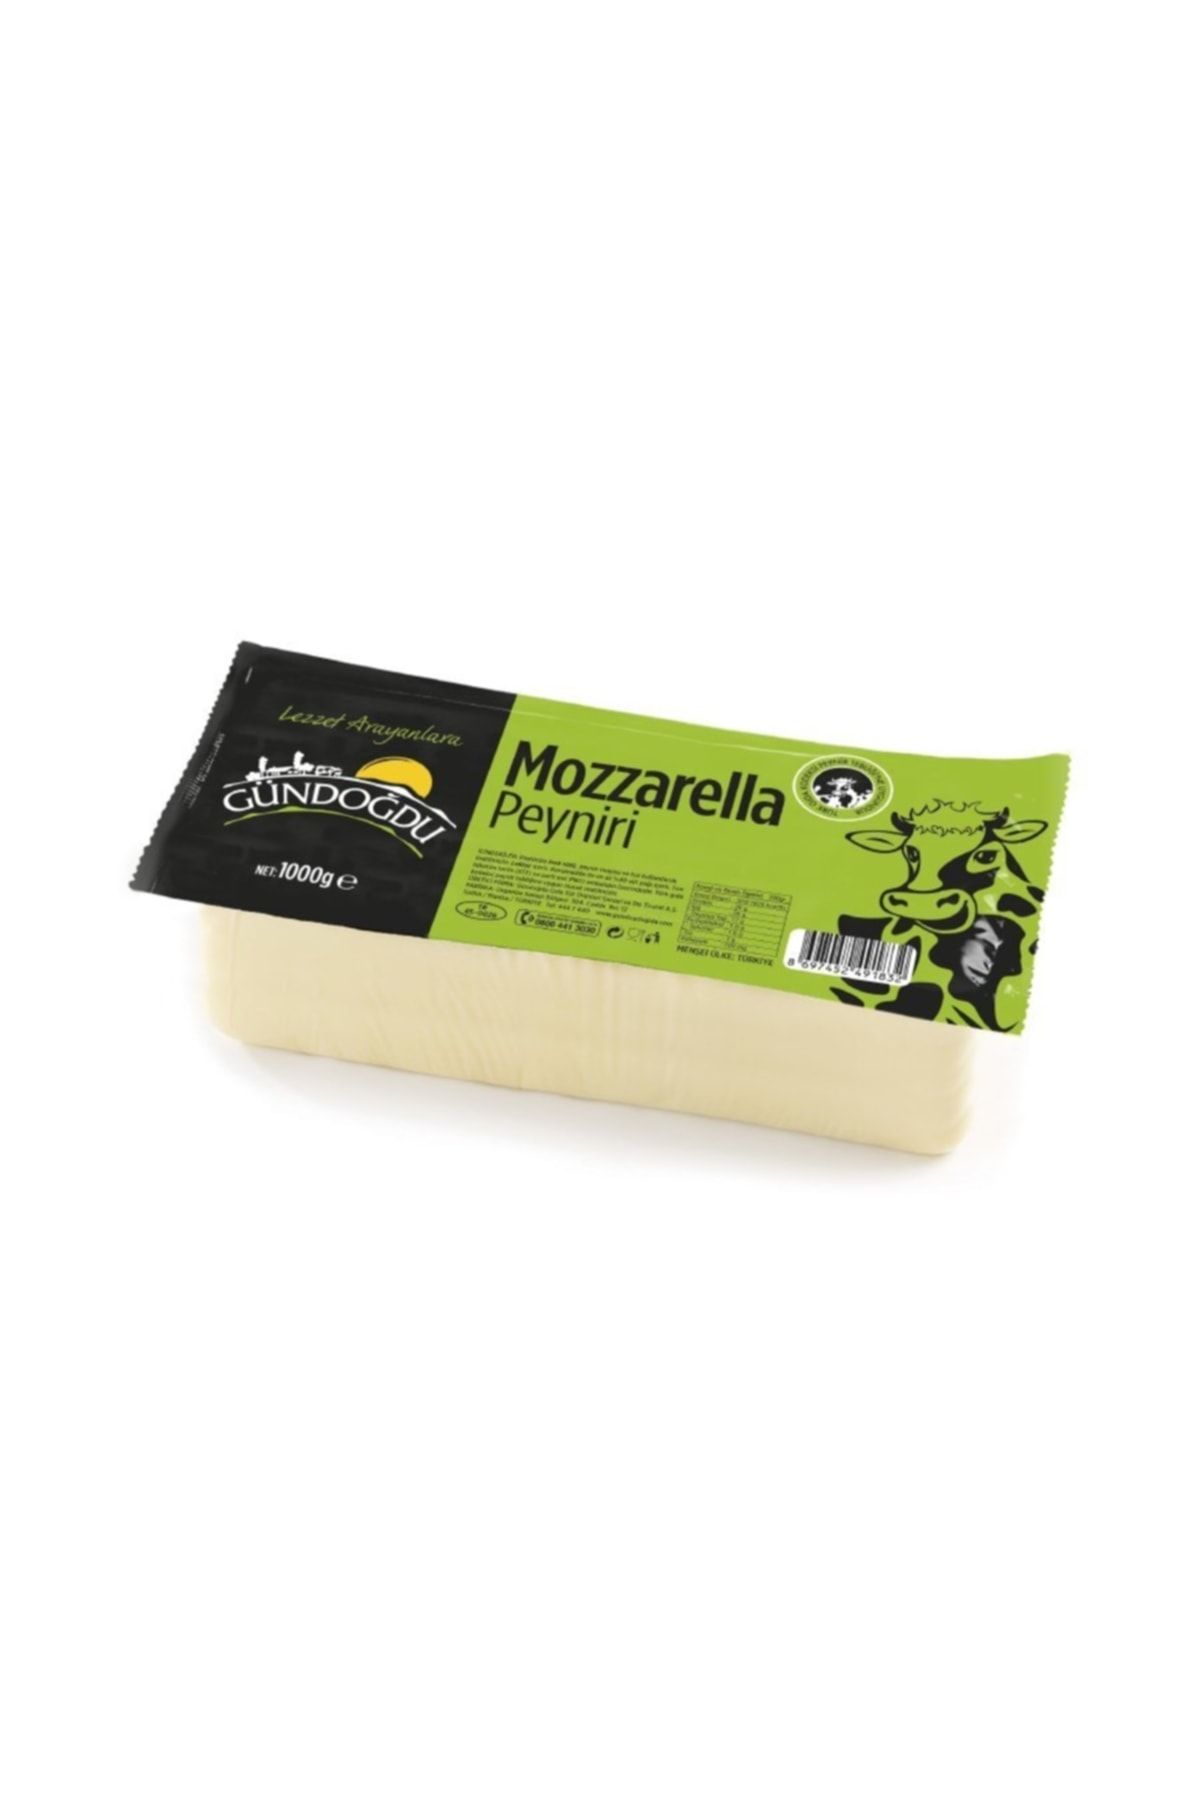 Gündoğdu Mozzarella Peyniri 1000gr Blok